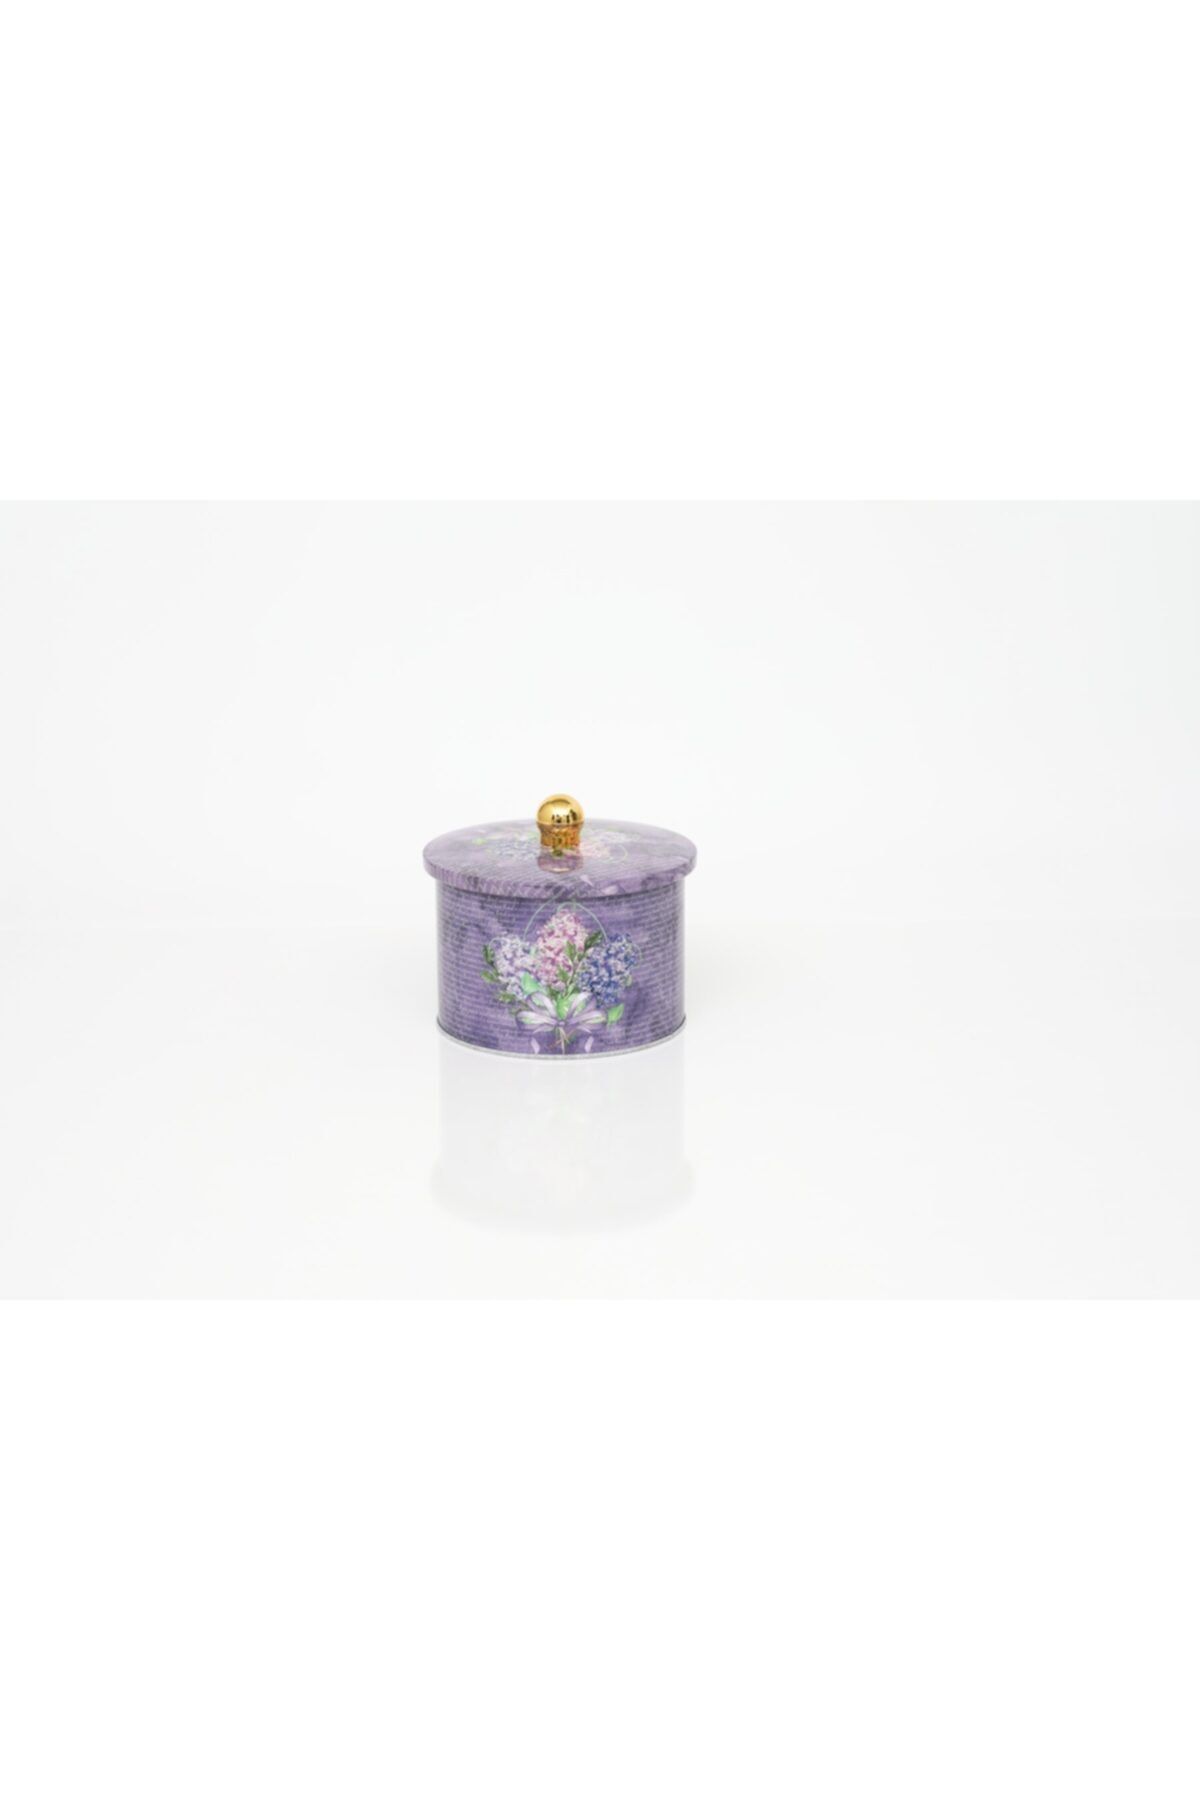 Evle Ef141-28 Flower Purple Desenli Yuvarlak Metal Saklama Kabı 14 Cm